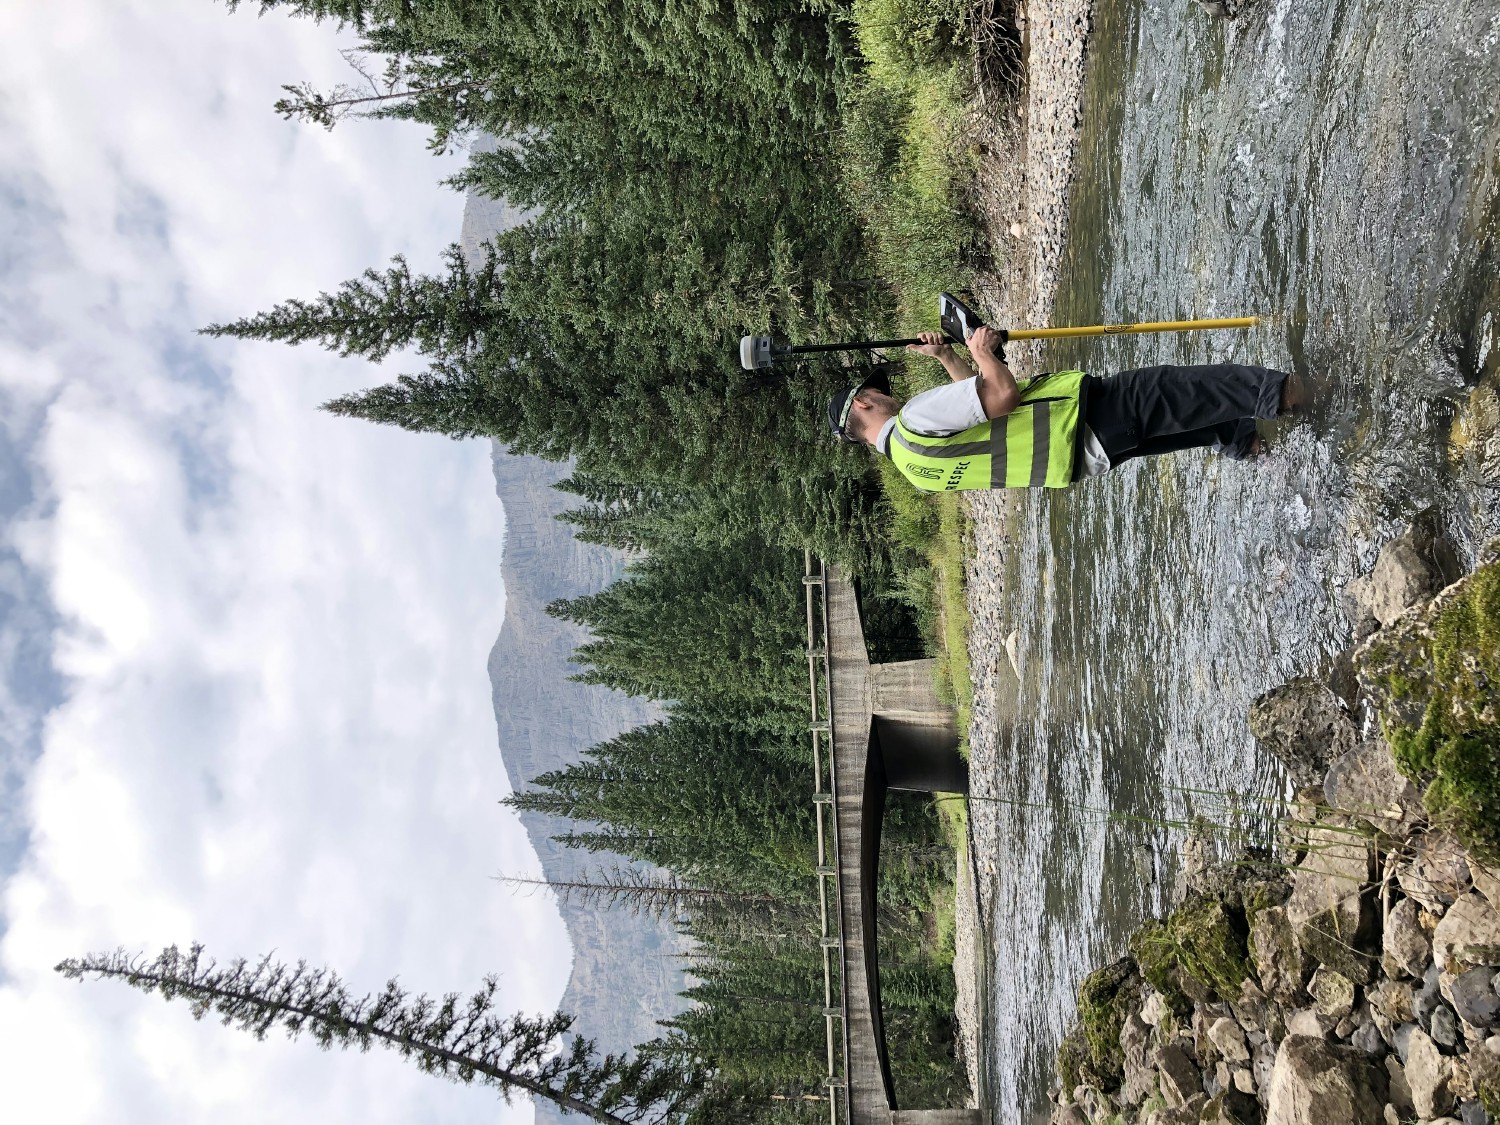 Bozeman office employee working on survey in Soda Butte Creek in Yellowstone National Park.